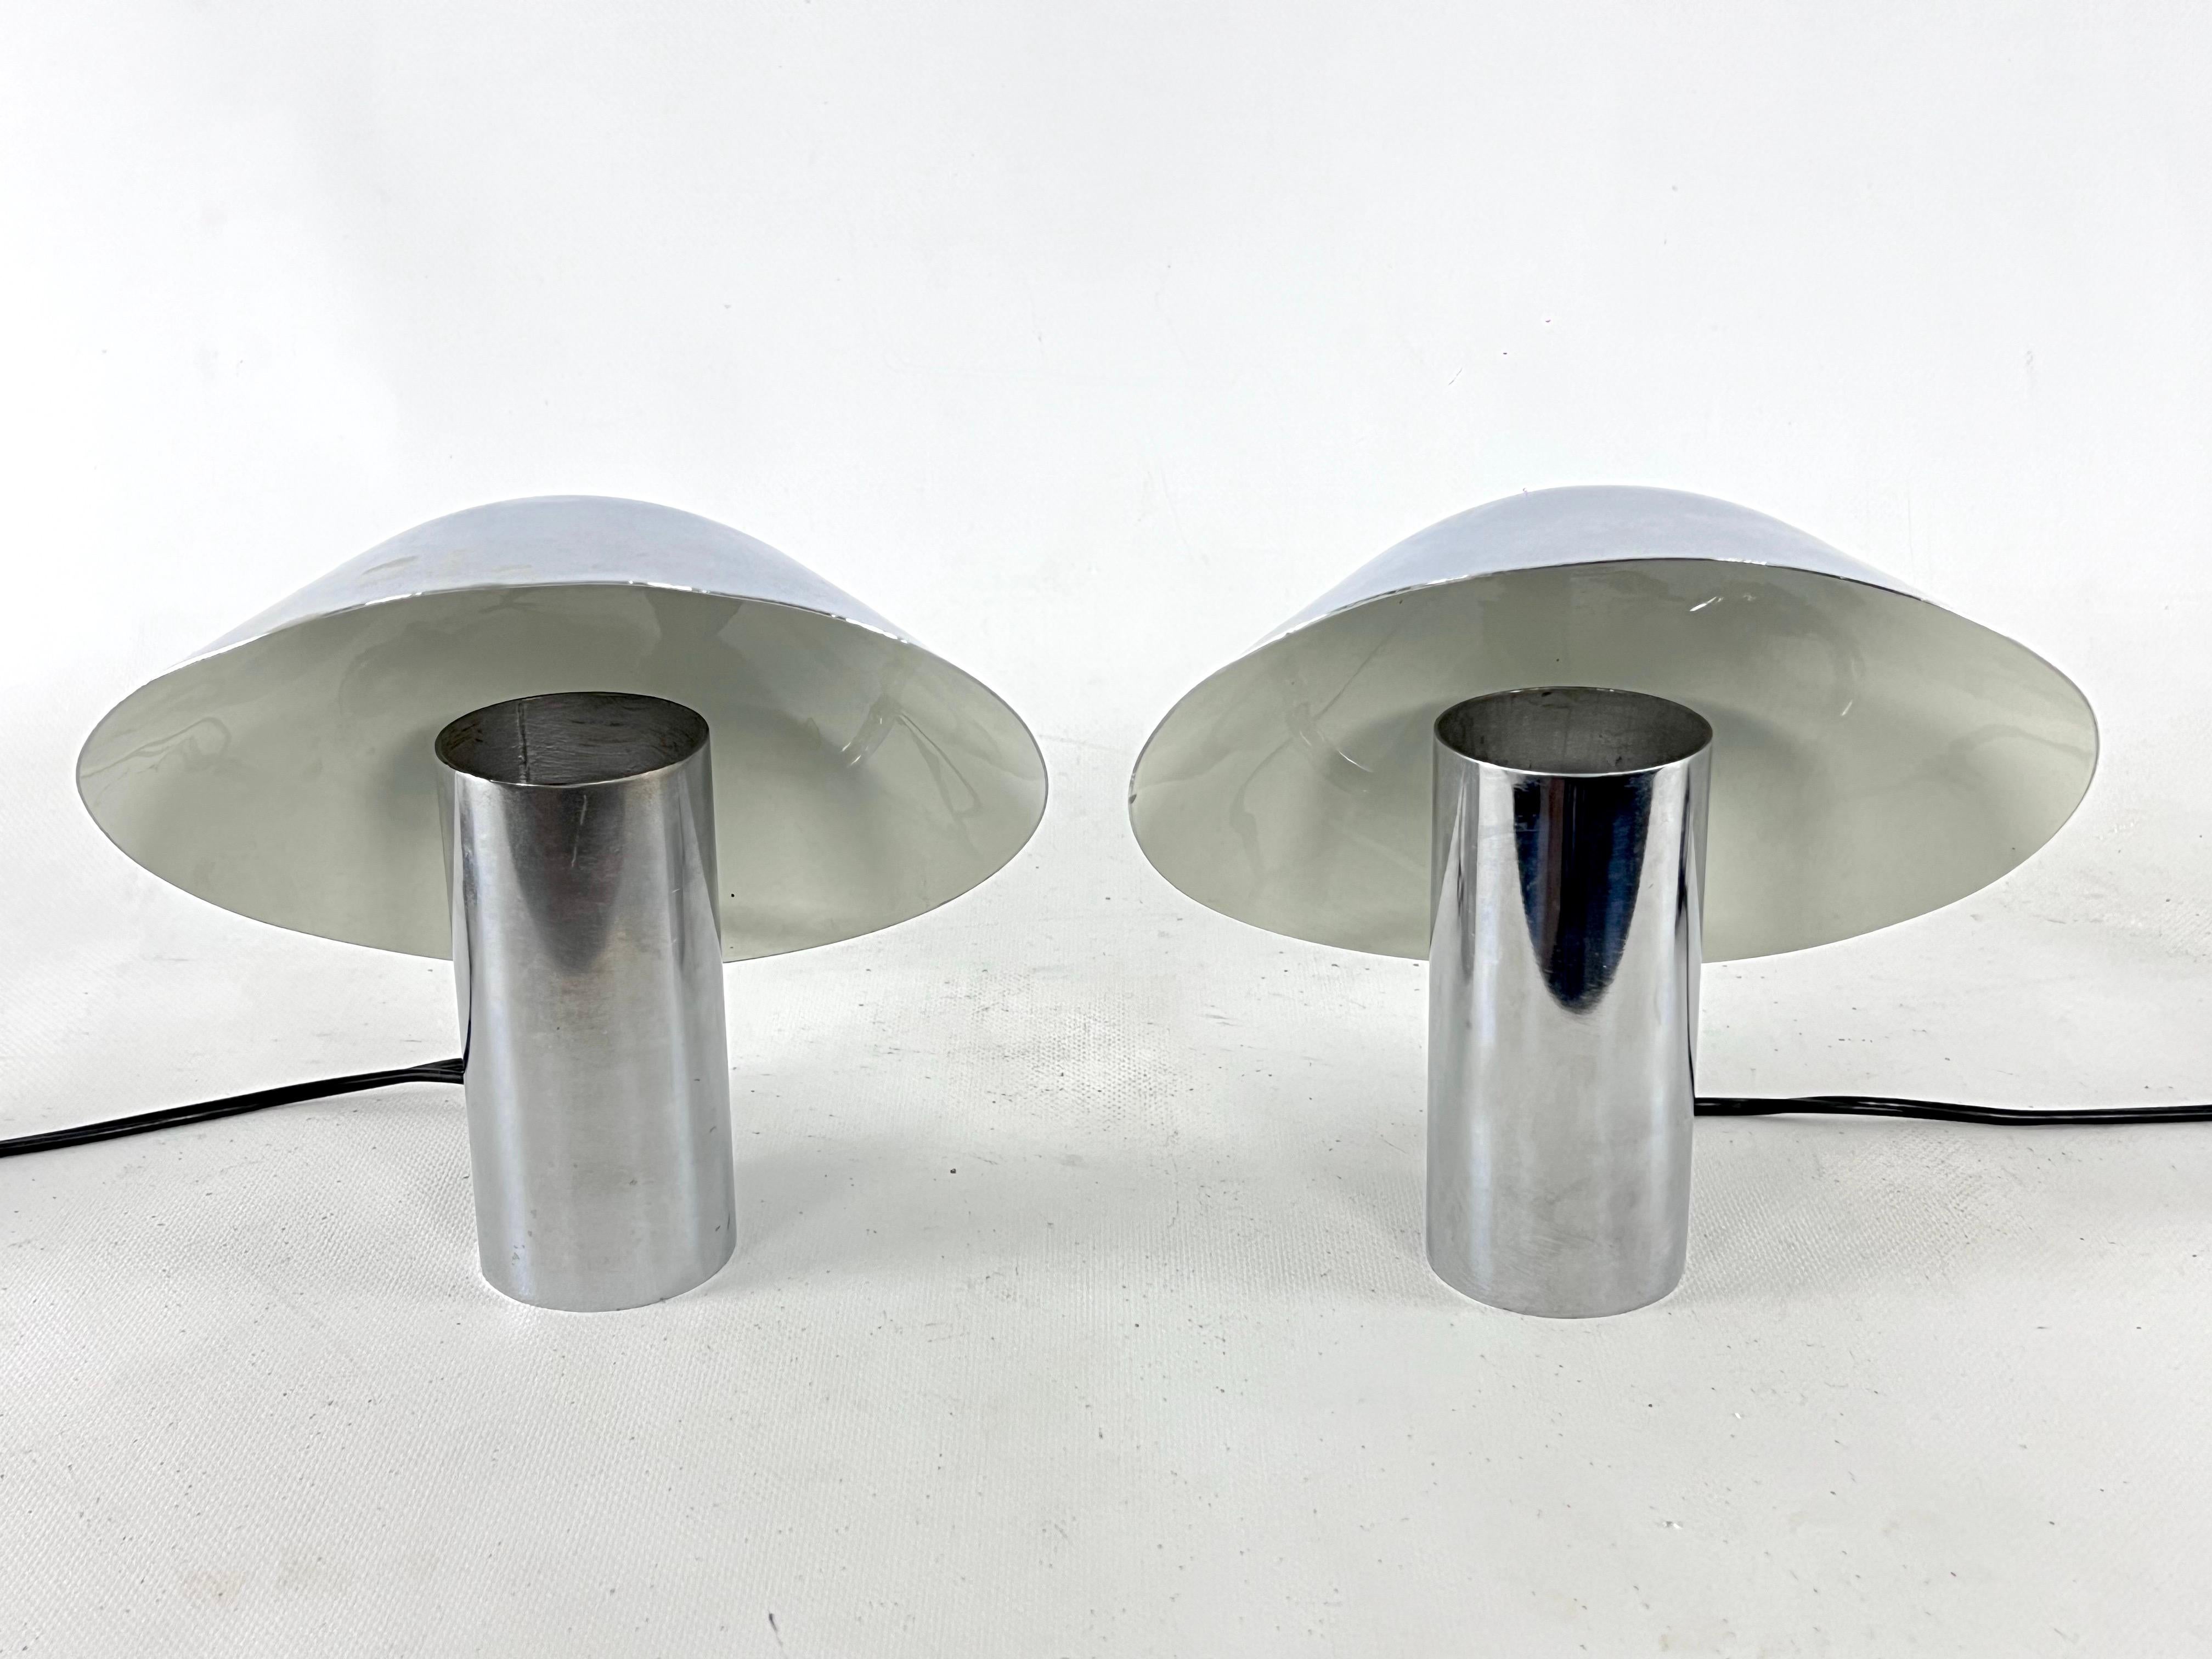 Guter Vintage-Zustand mit normalen Alters- und Gebrauchsspuren für dieses seltene Set von zwei Tischlampen, entworfen von Sergio Mazza und Giuliana Gramigna für Quattrifolio. Produziert in Italien in den 70er Jahren. Voll funktionsfähig mit